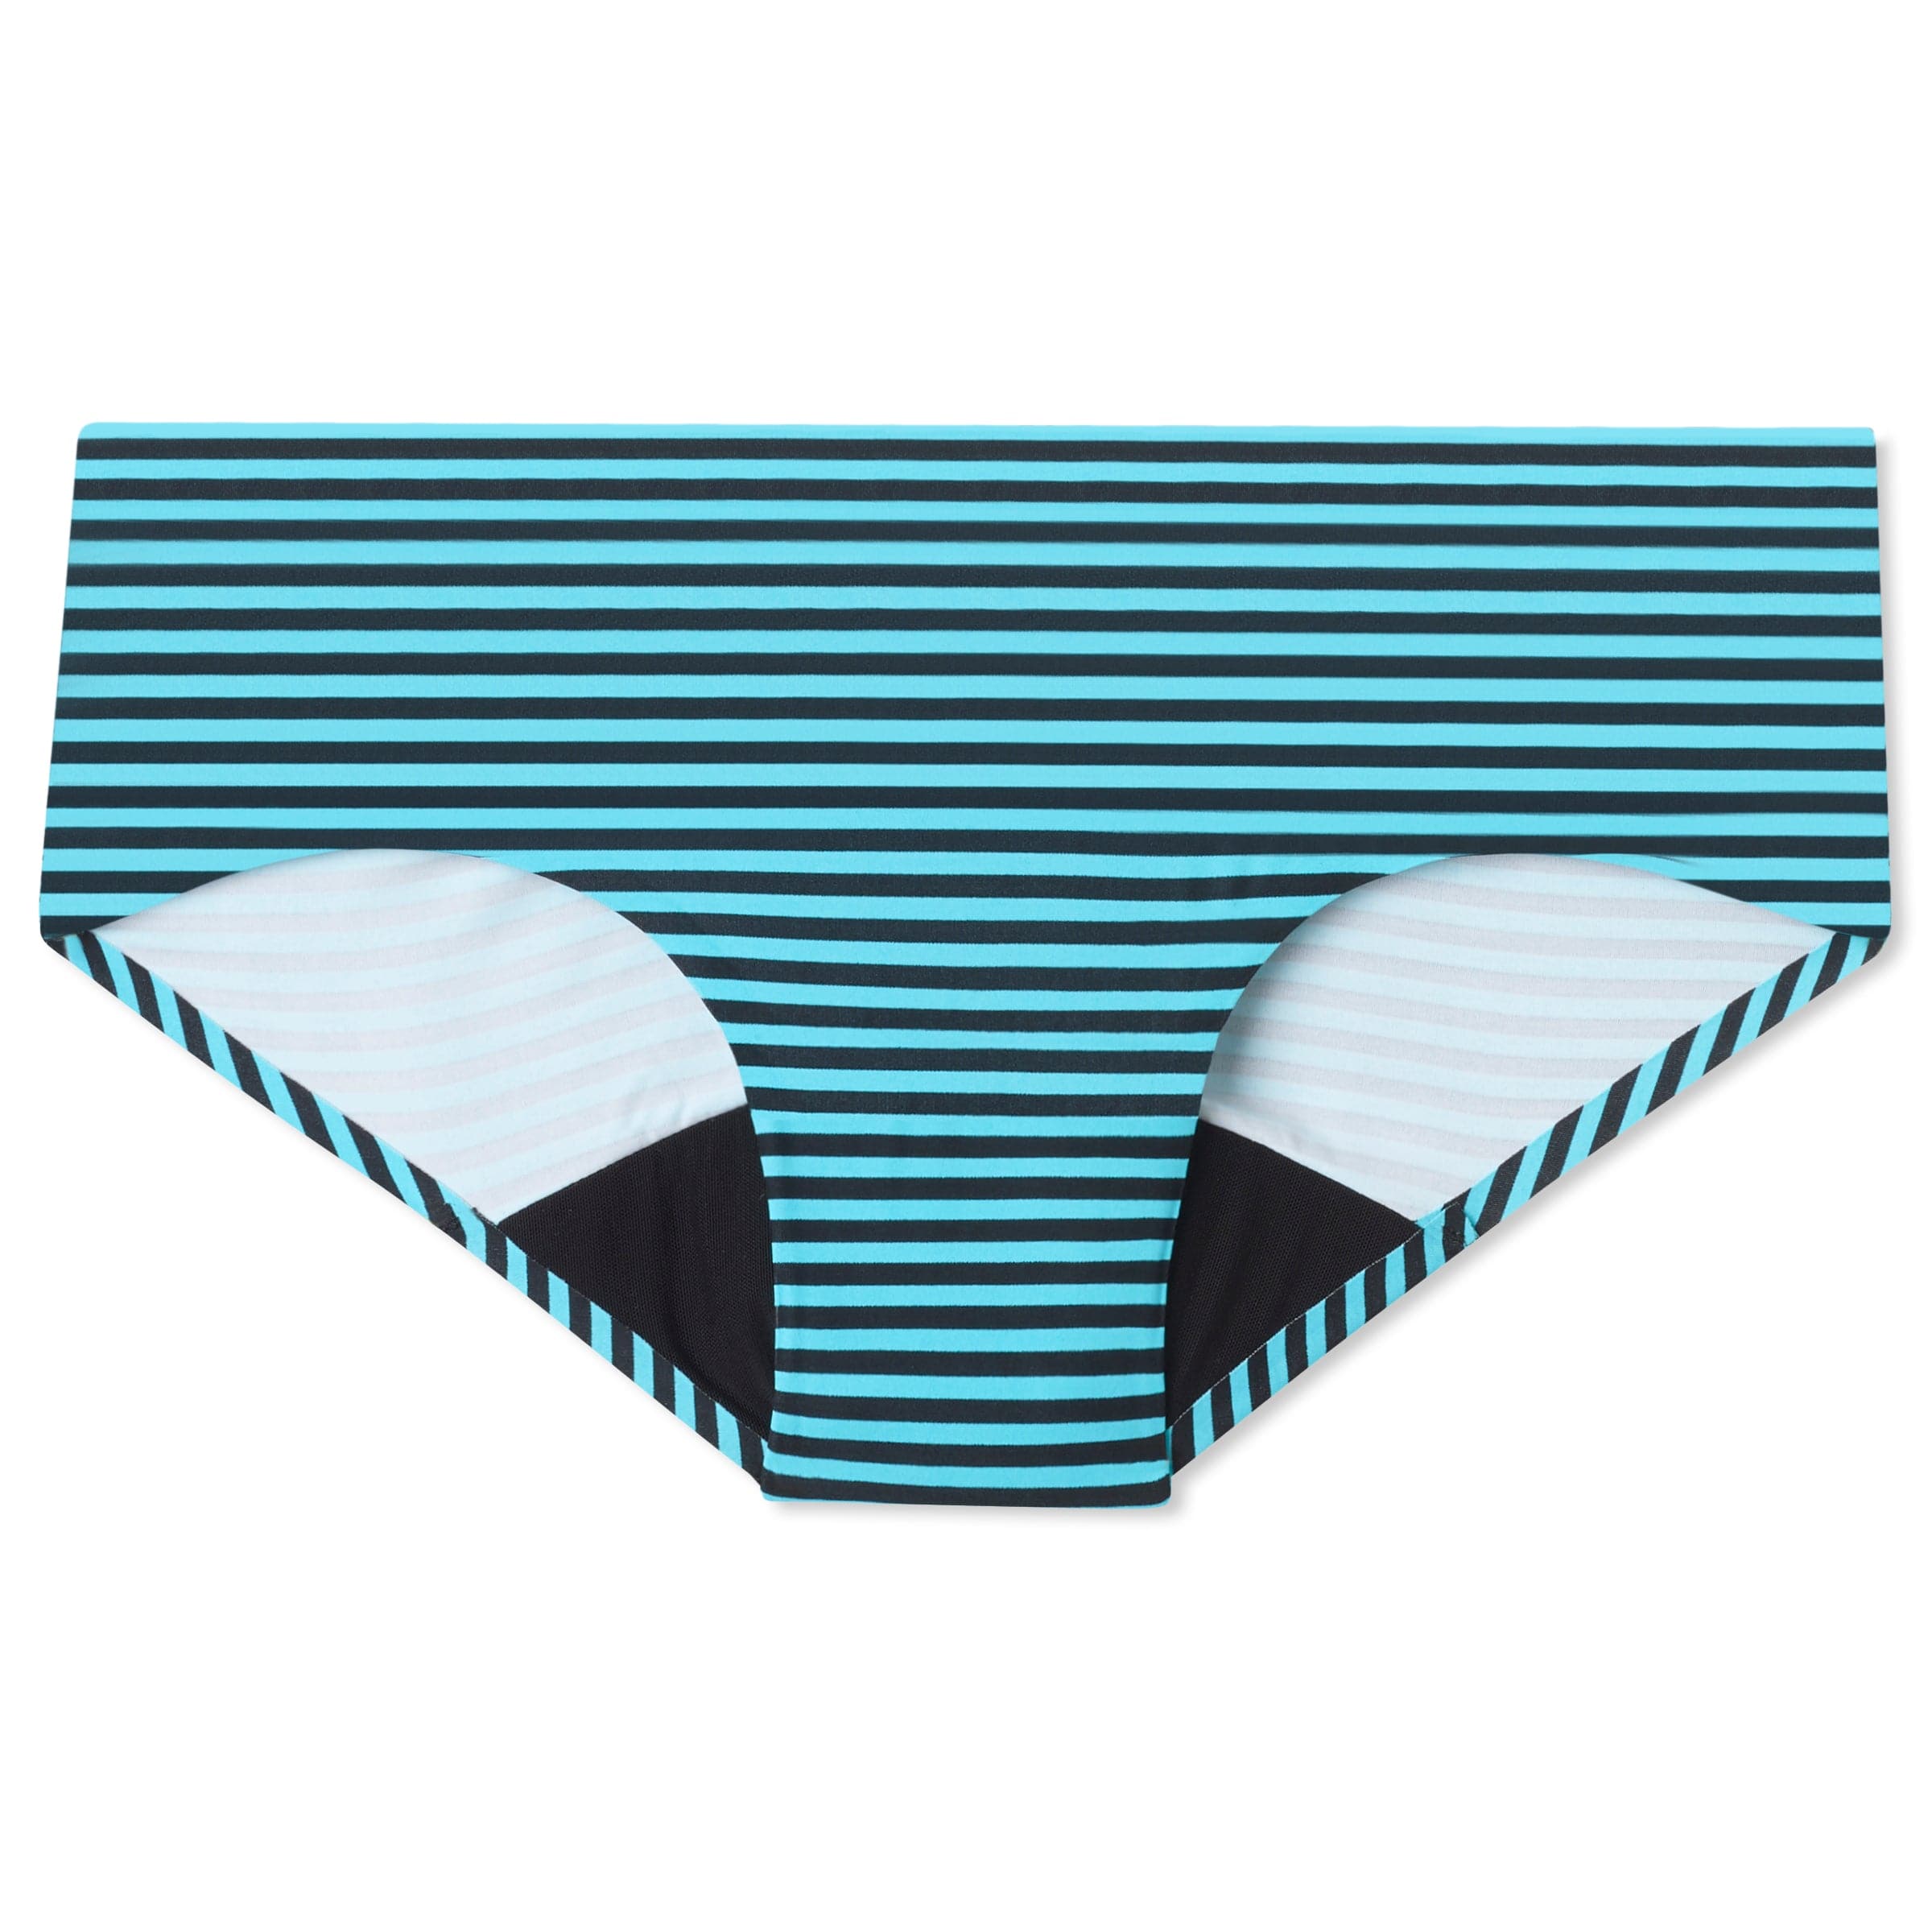 Women's Period Underwear - Hipster | Blueberry Stripe